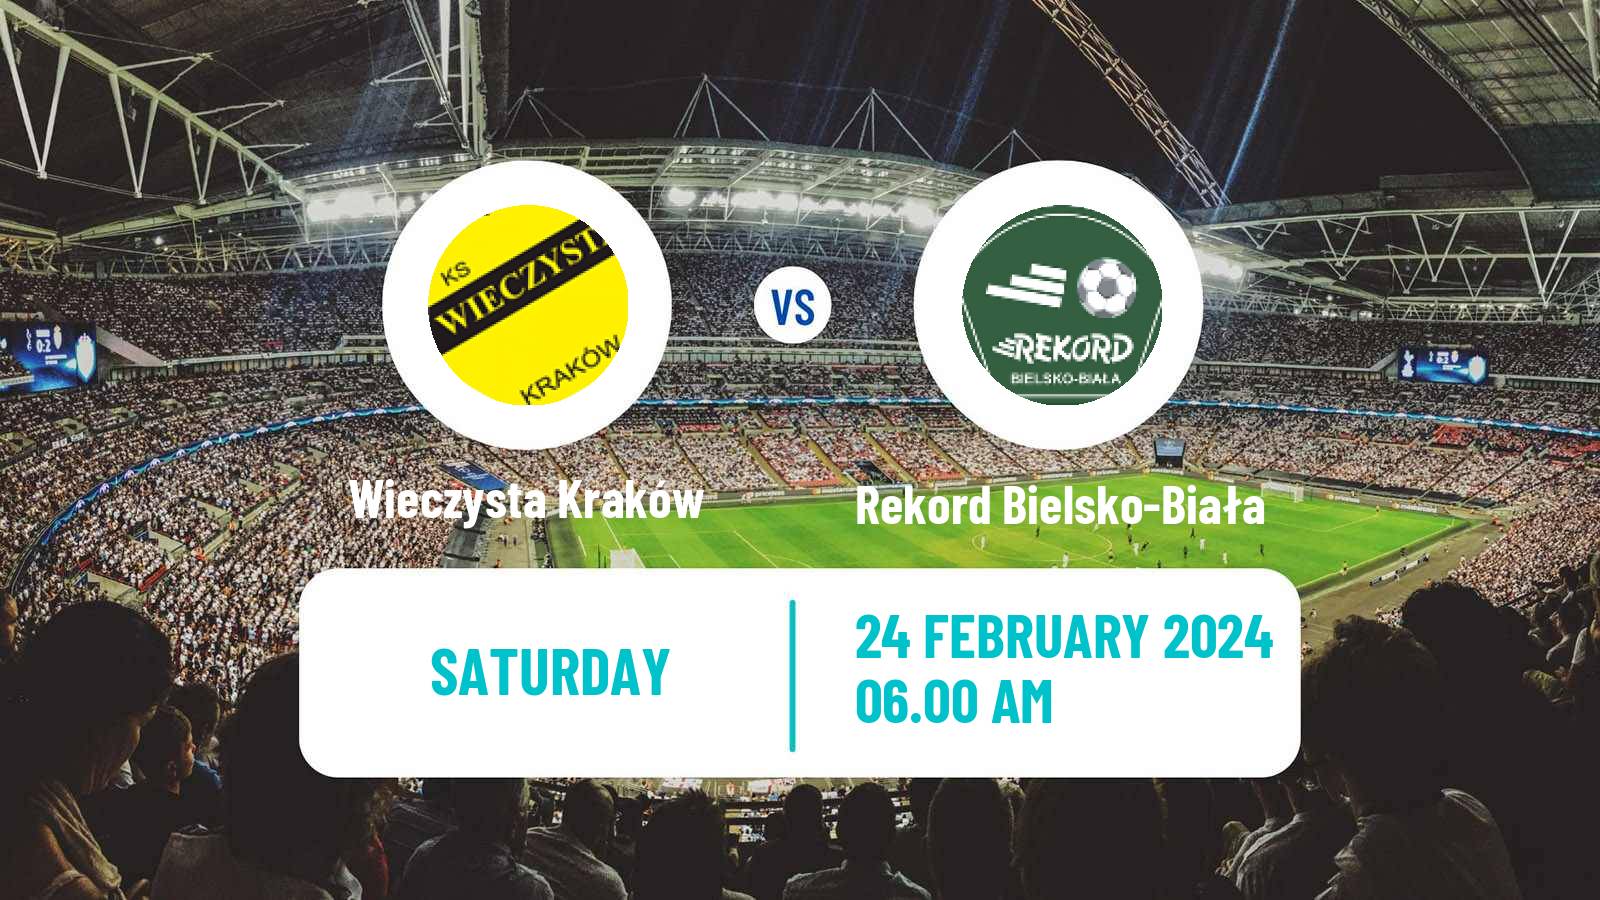 Soccer Club Friendly Wieczysta Kraków - Rekord Bielsko-Biała